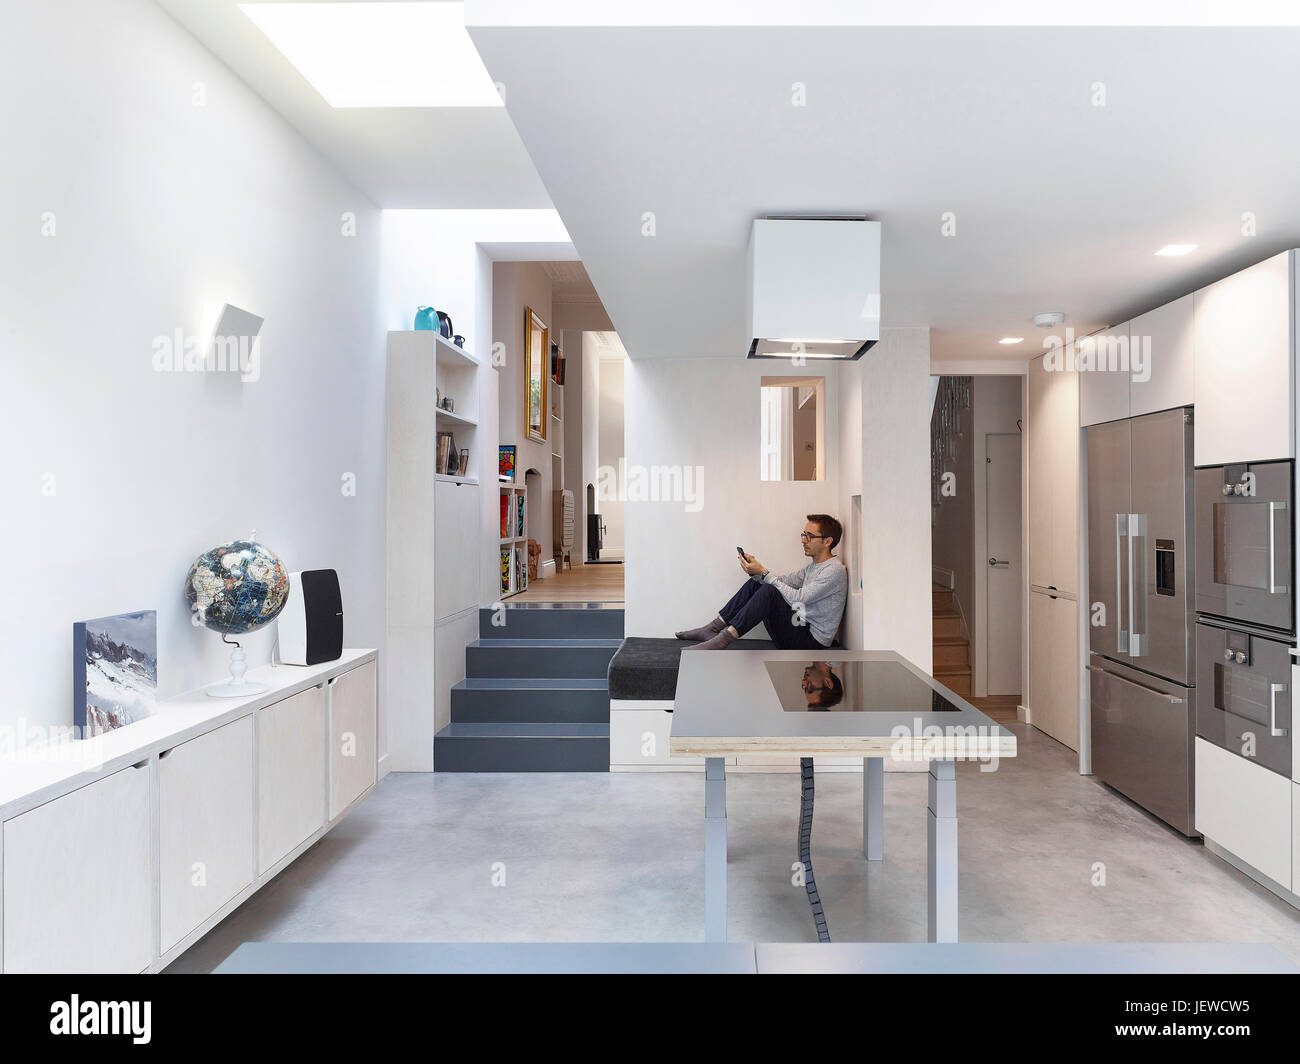 Integrierte Tagesbett und Küche. Die Folie Rückkehr, London, Vereinigtes Königreich. Architekt: Stadtprojekte Bureau, 2016. Stockfoto